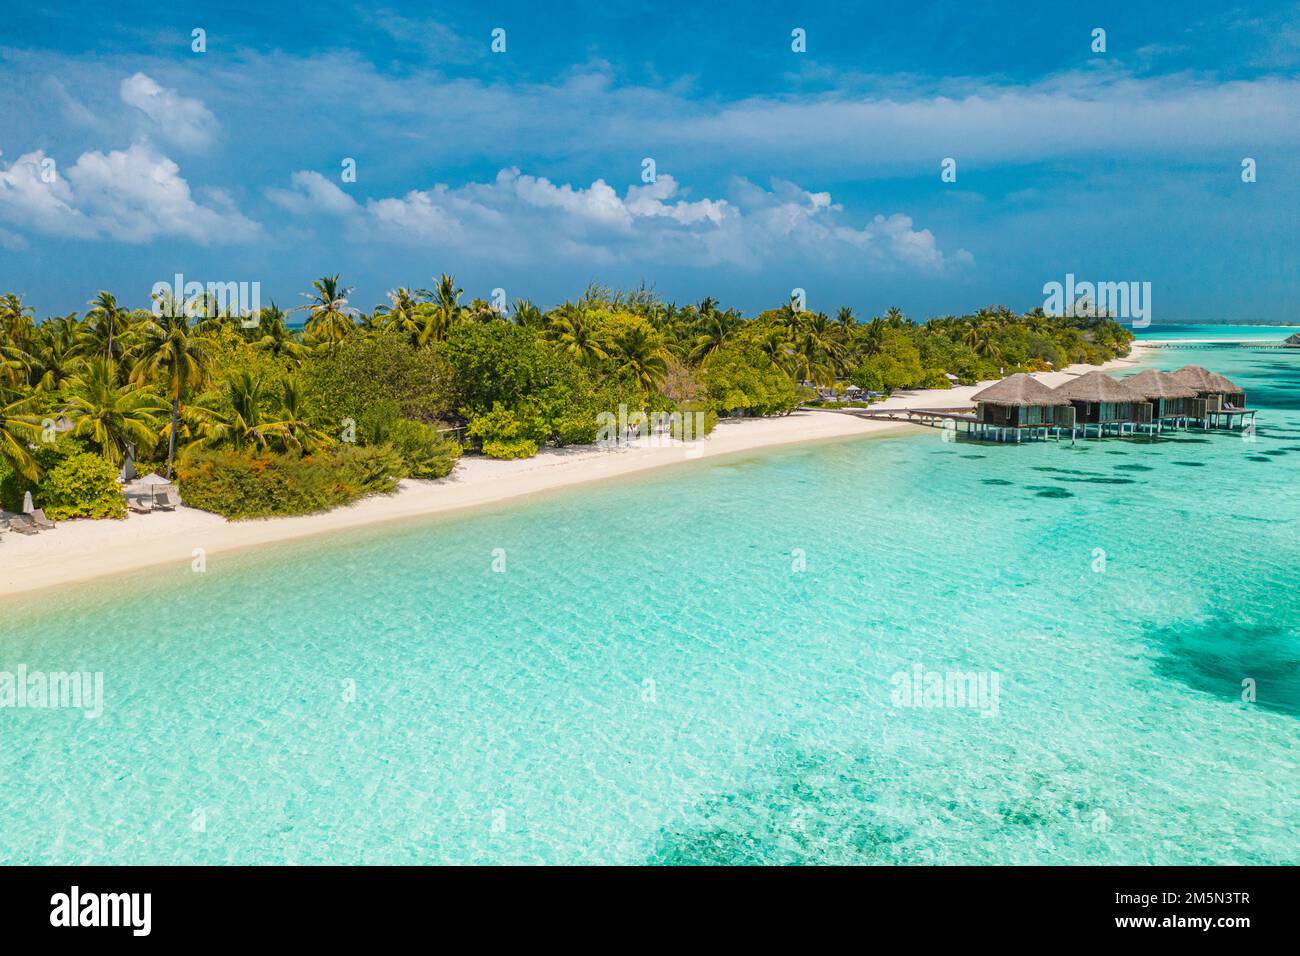 Perfekte Luftlandschaft, luxuriöses tropisches Resort mit Wasservillen. Wunderschöner Inselstrand, Palmen, sonniger Himmel. Fantastische Aussicht auf die Malediven Stockfoto